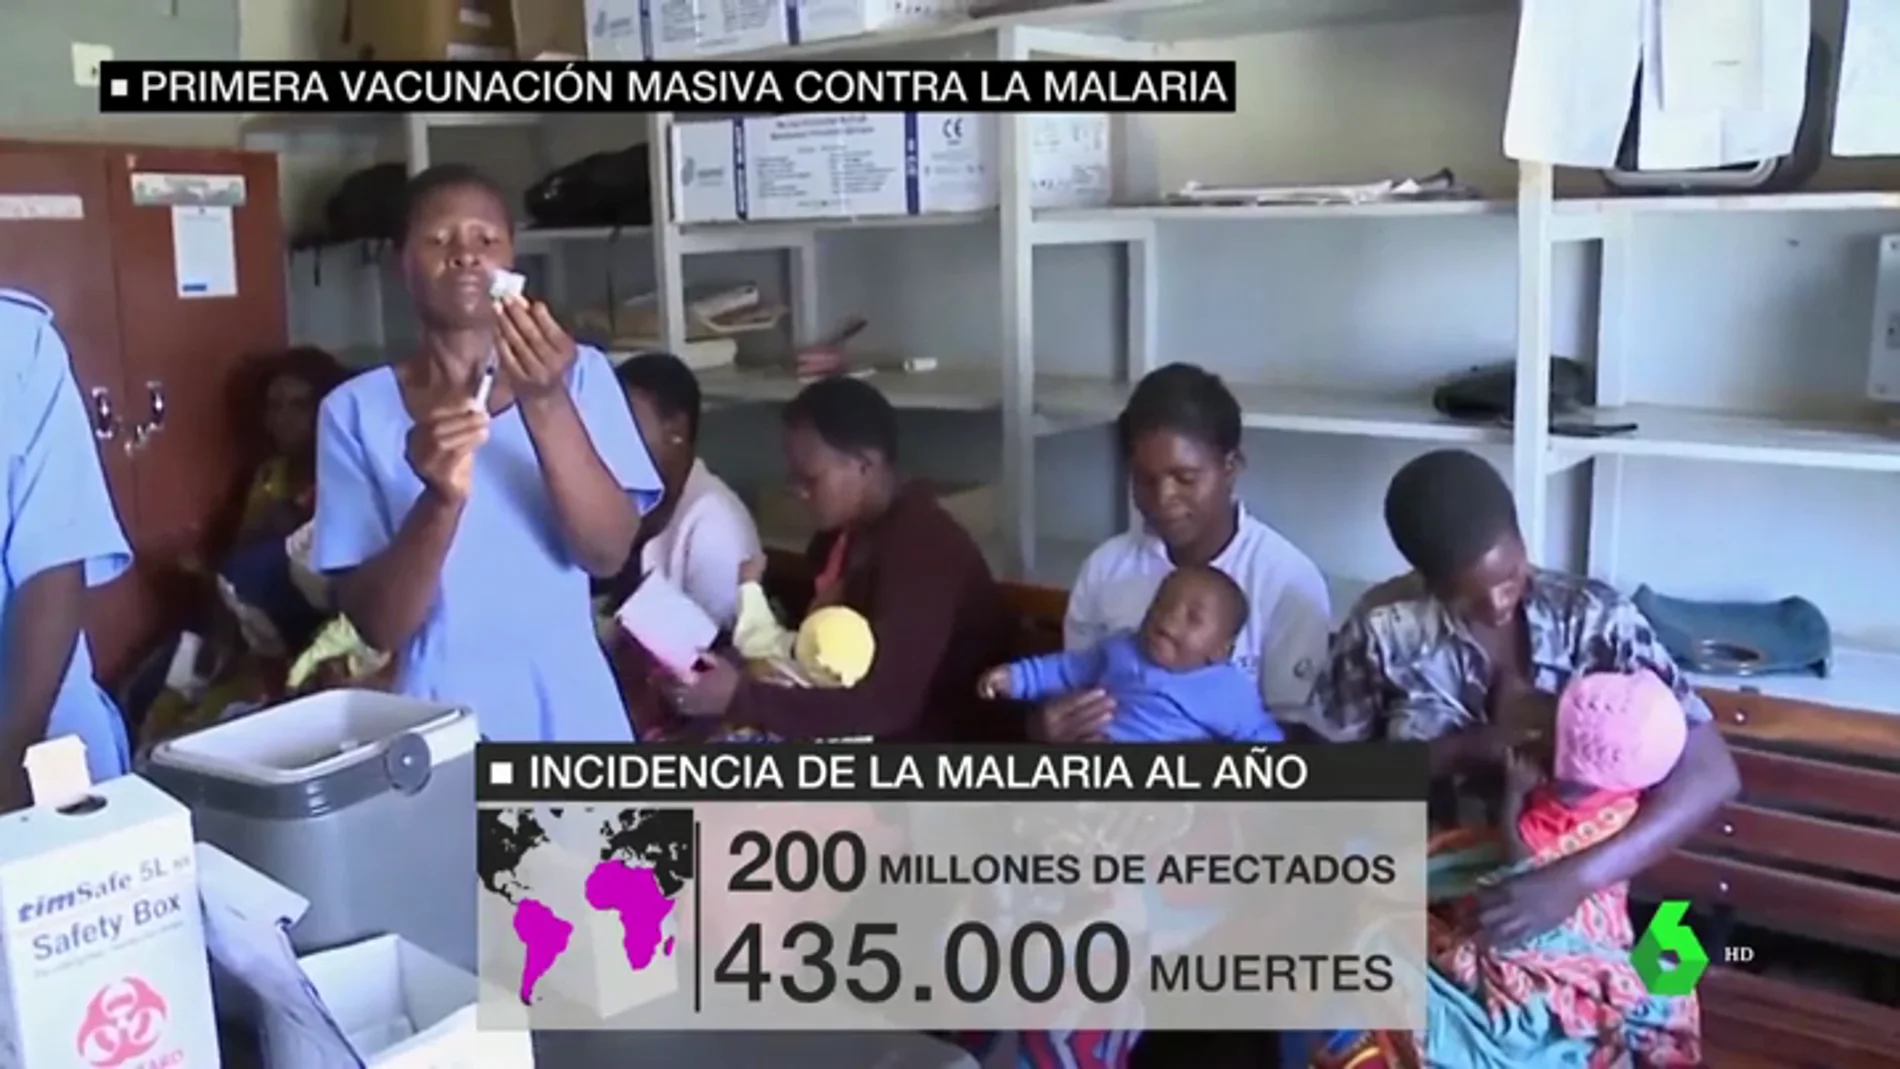 Miles de niños africanos recibirán la vacuna contra la malaria tras 30 años de investigación contra la enfermedad